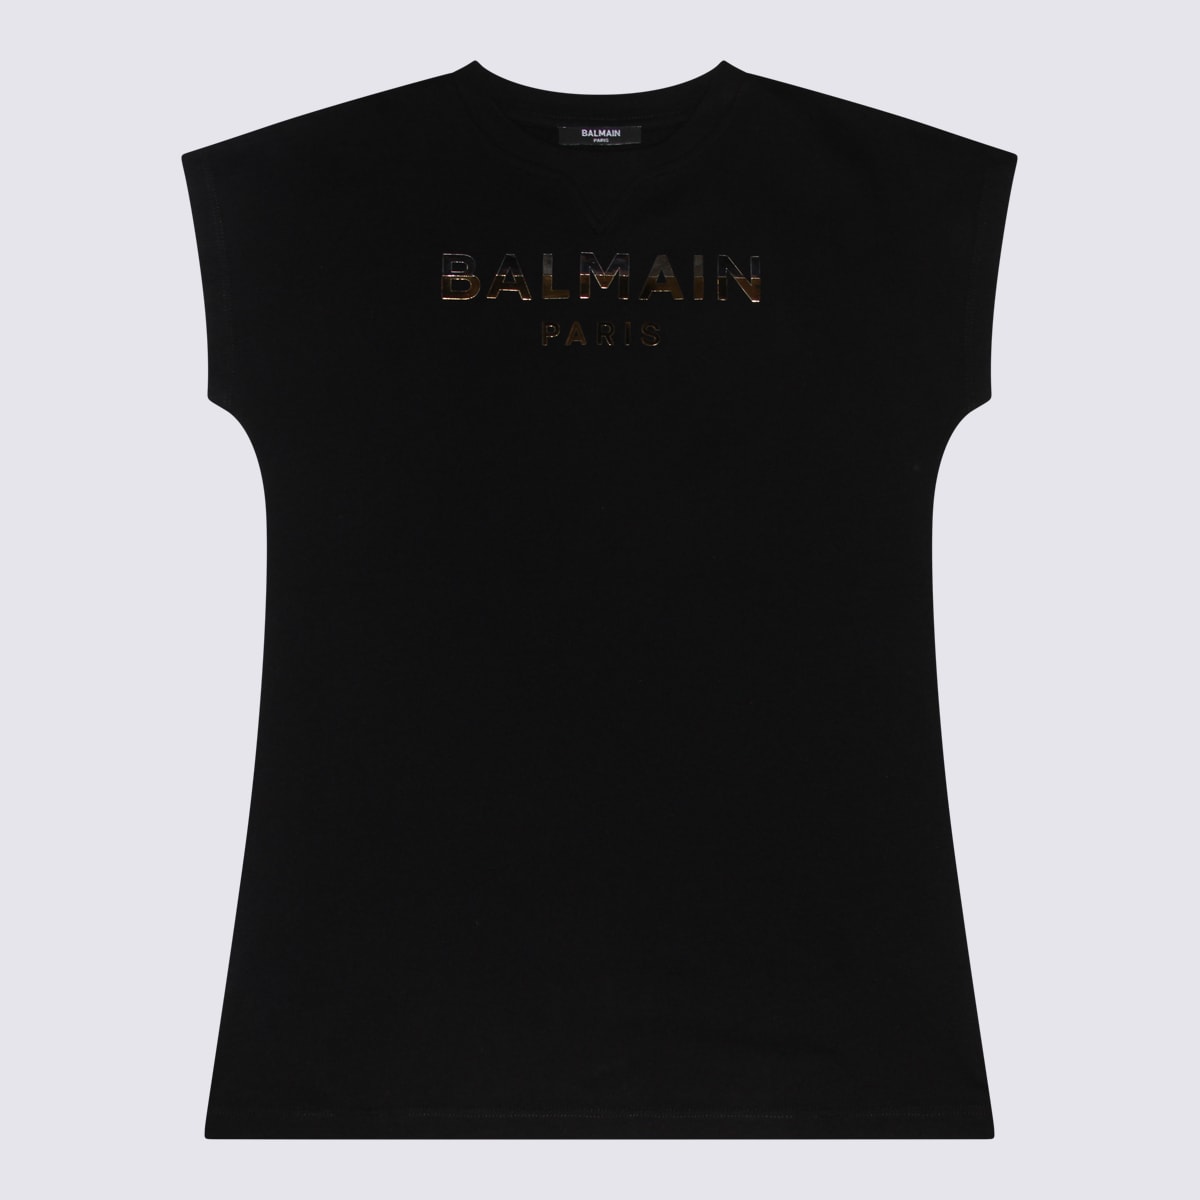 Shop Balmain Black Cotton Dress